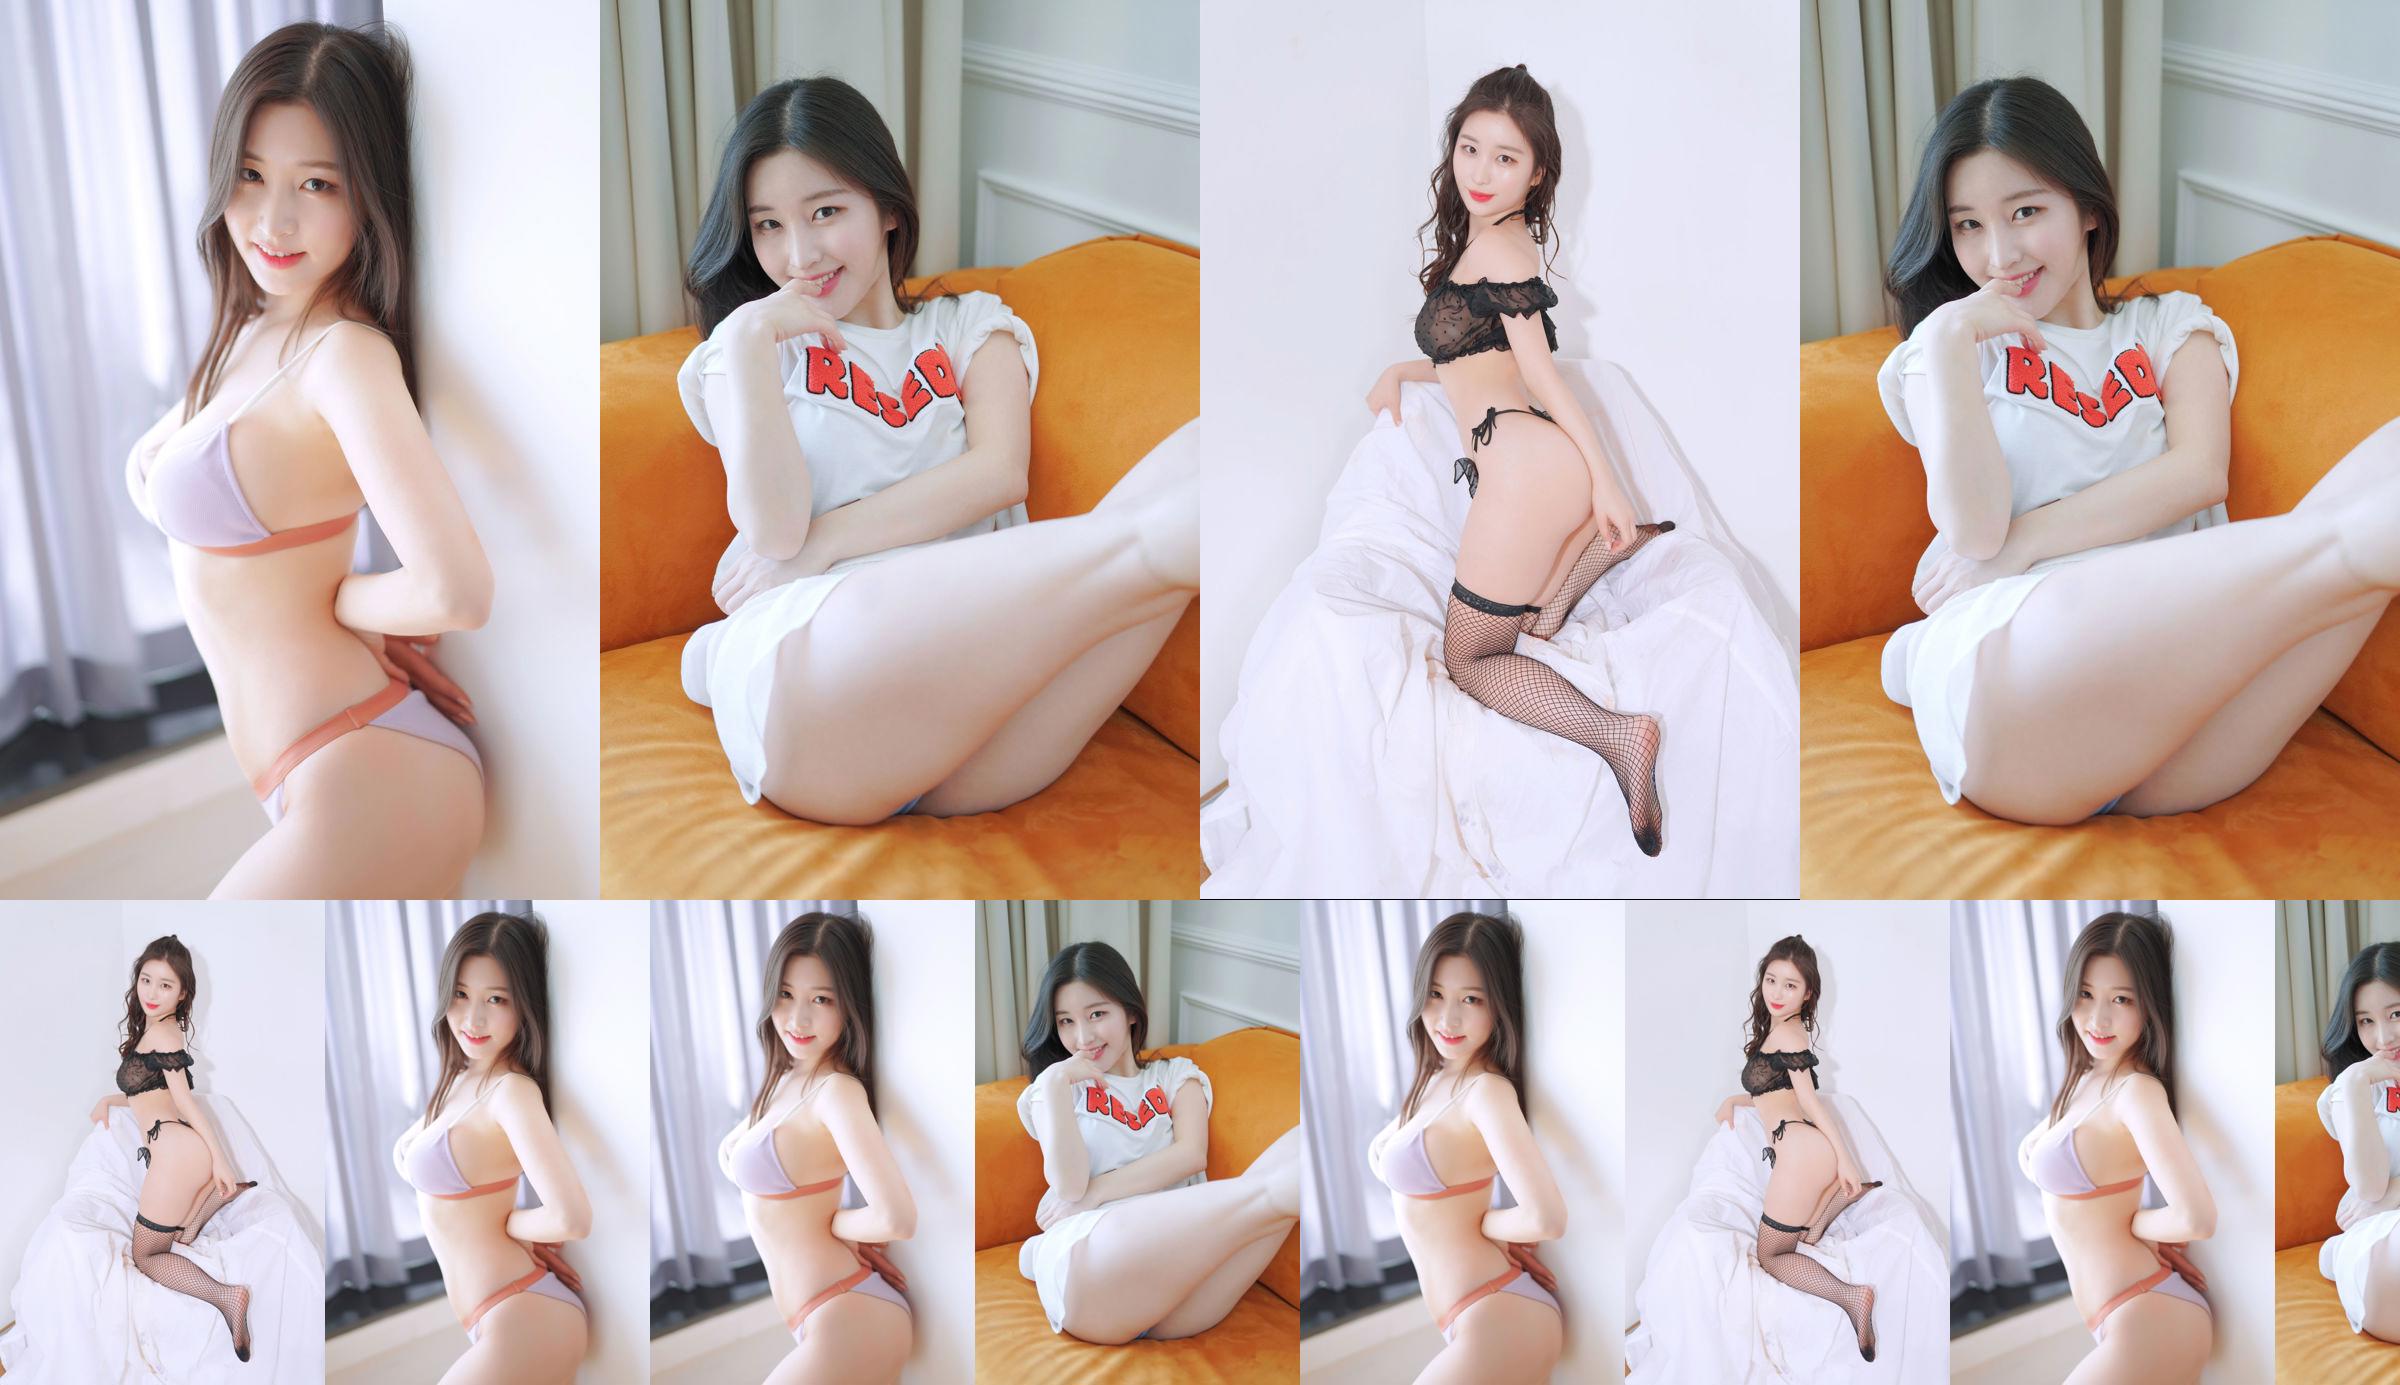 [Forêt rose] - Najung Vol.1 Sunny Side - Kim Na Jung No.62c92f Page 1